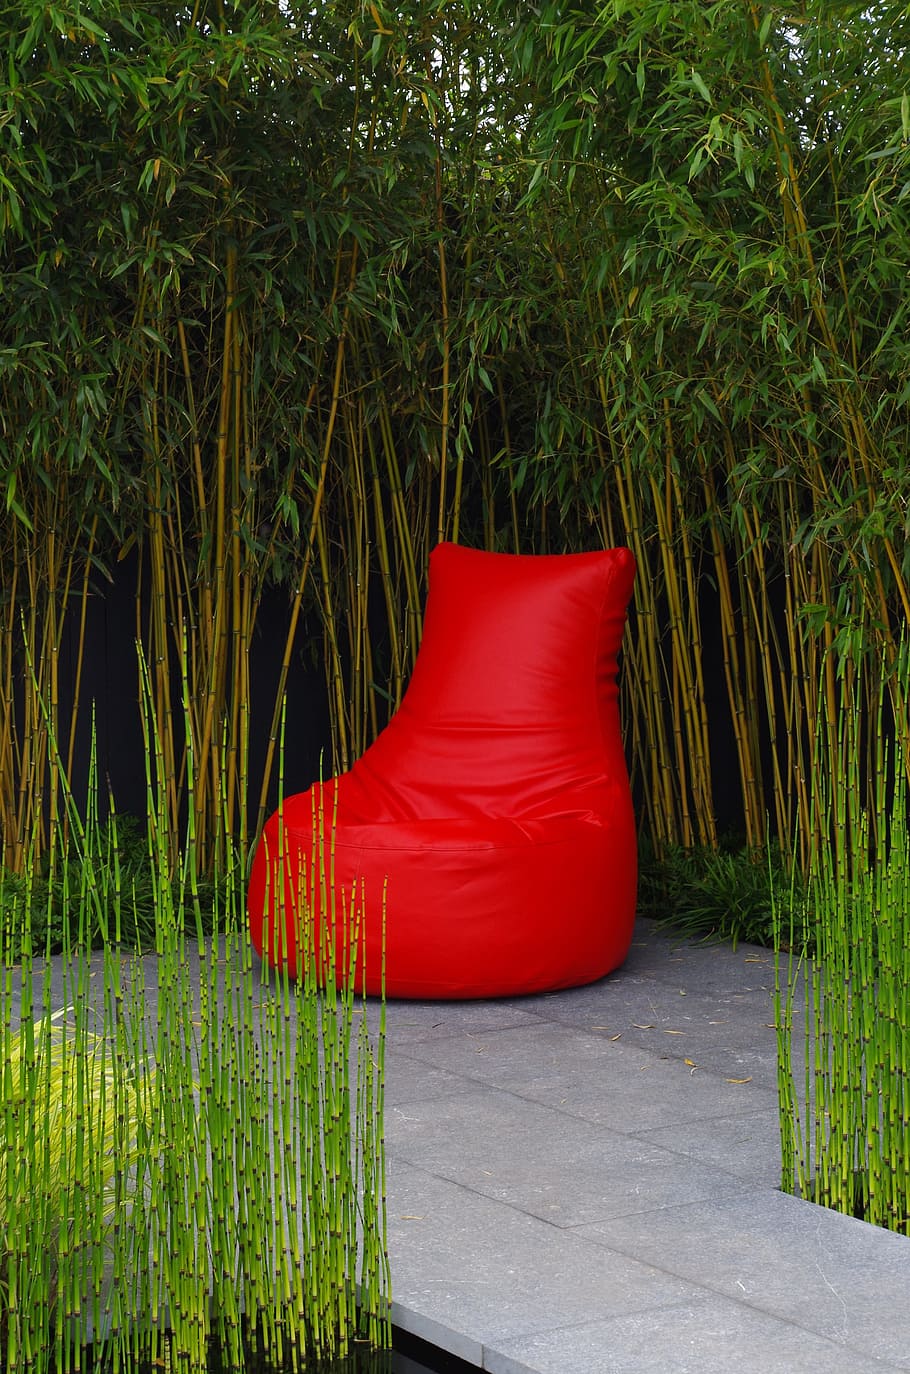 tas kacang merah, pola pikir, faq, merah, hijau, kursi, pohon, willow, alang-alang, bambu